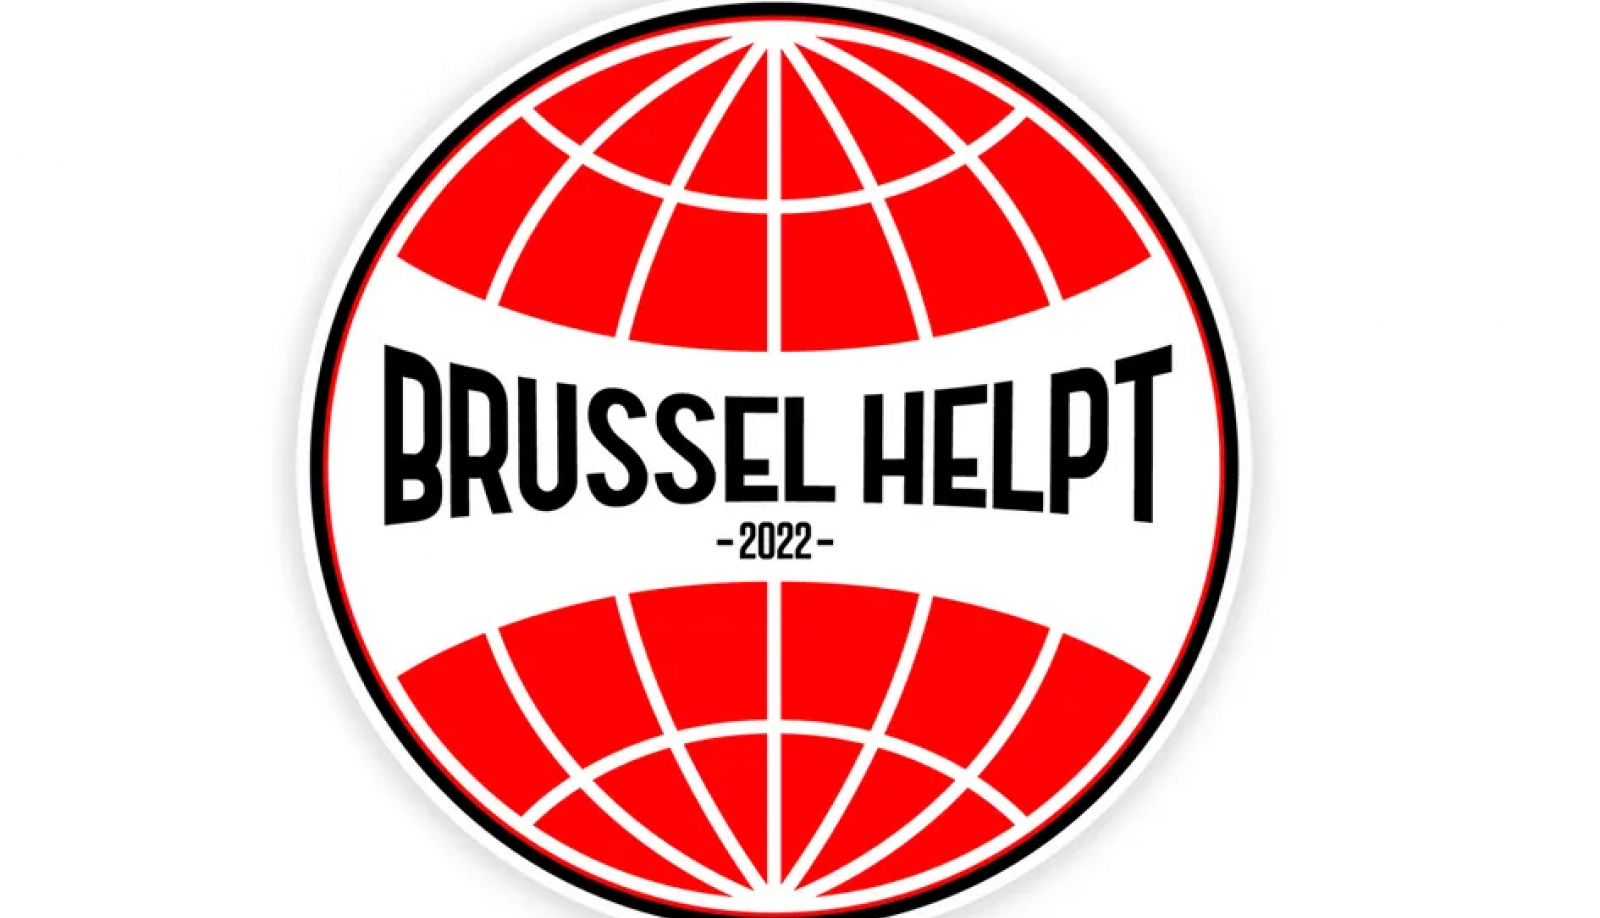 Brussel Helpt 2022